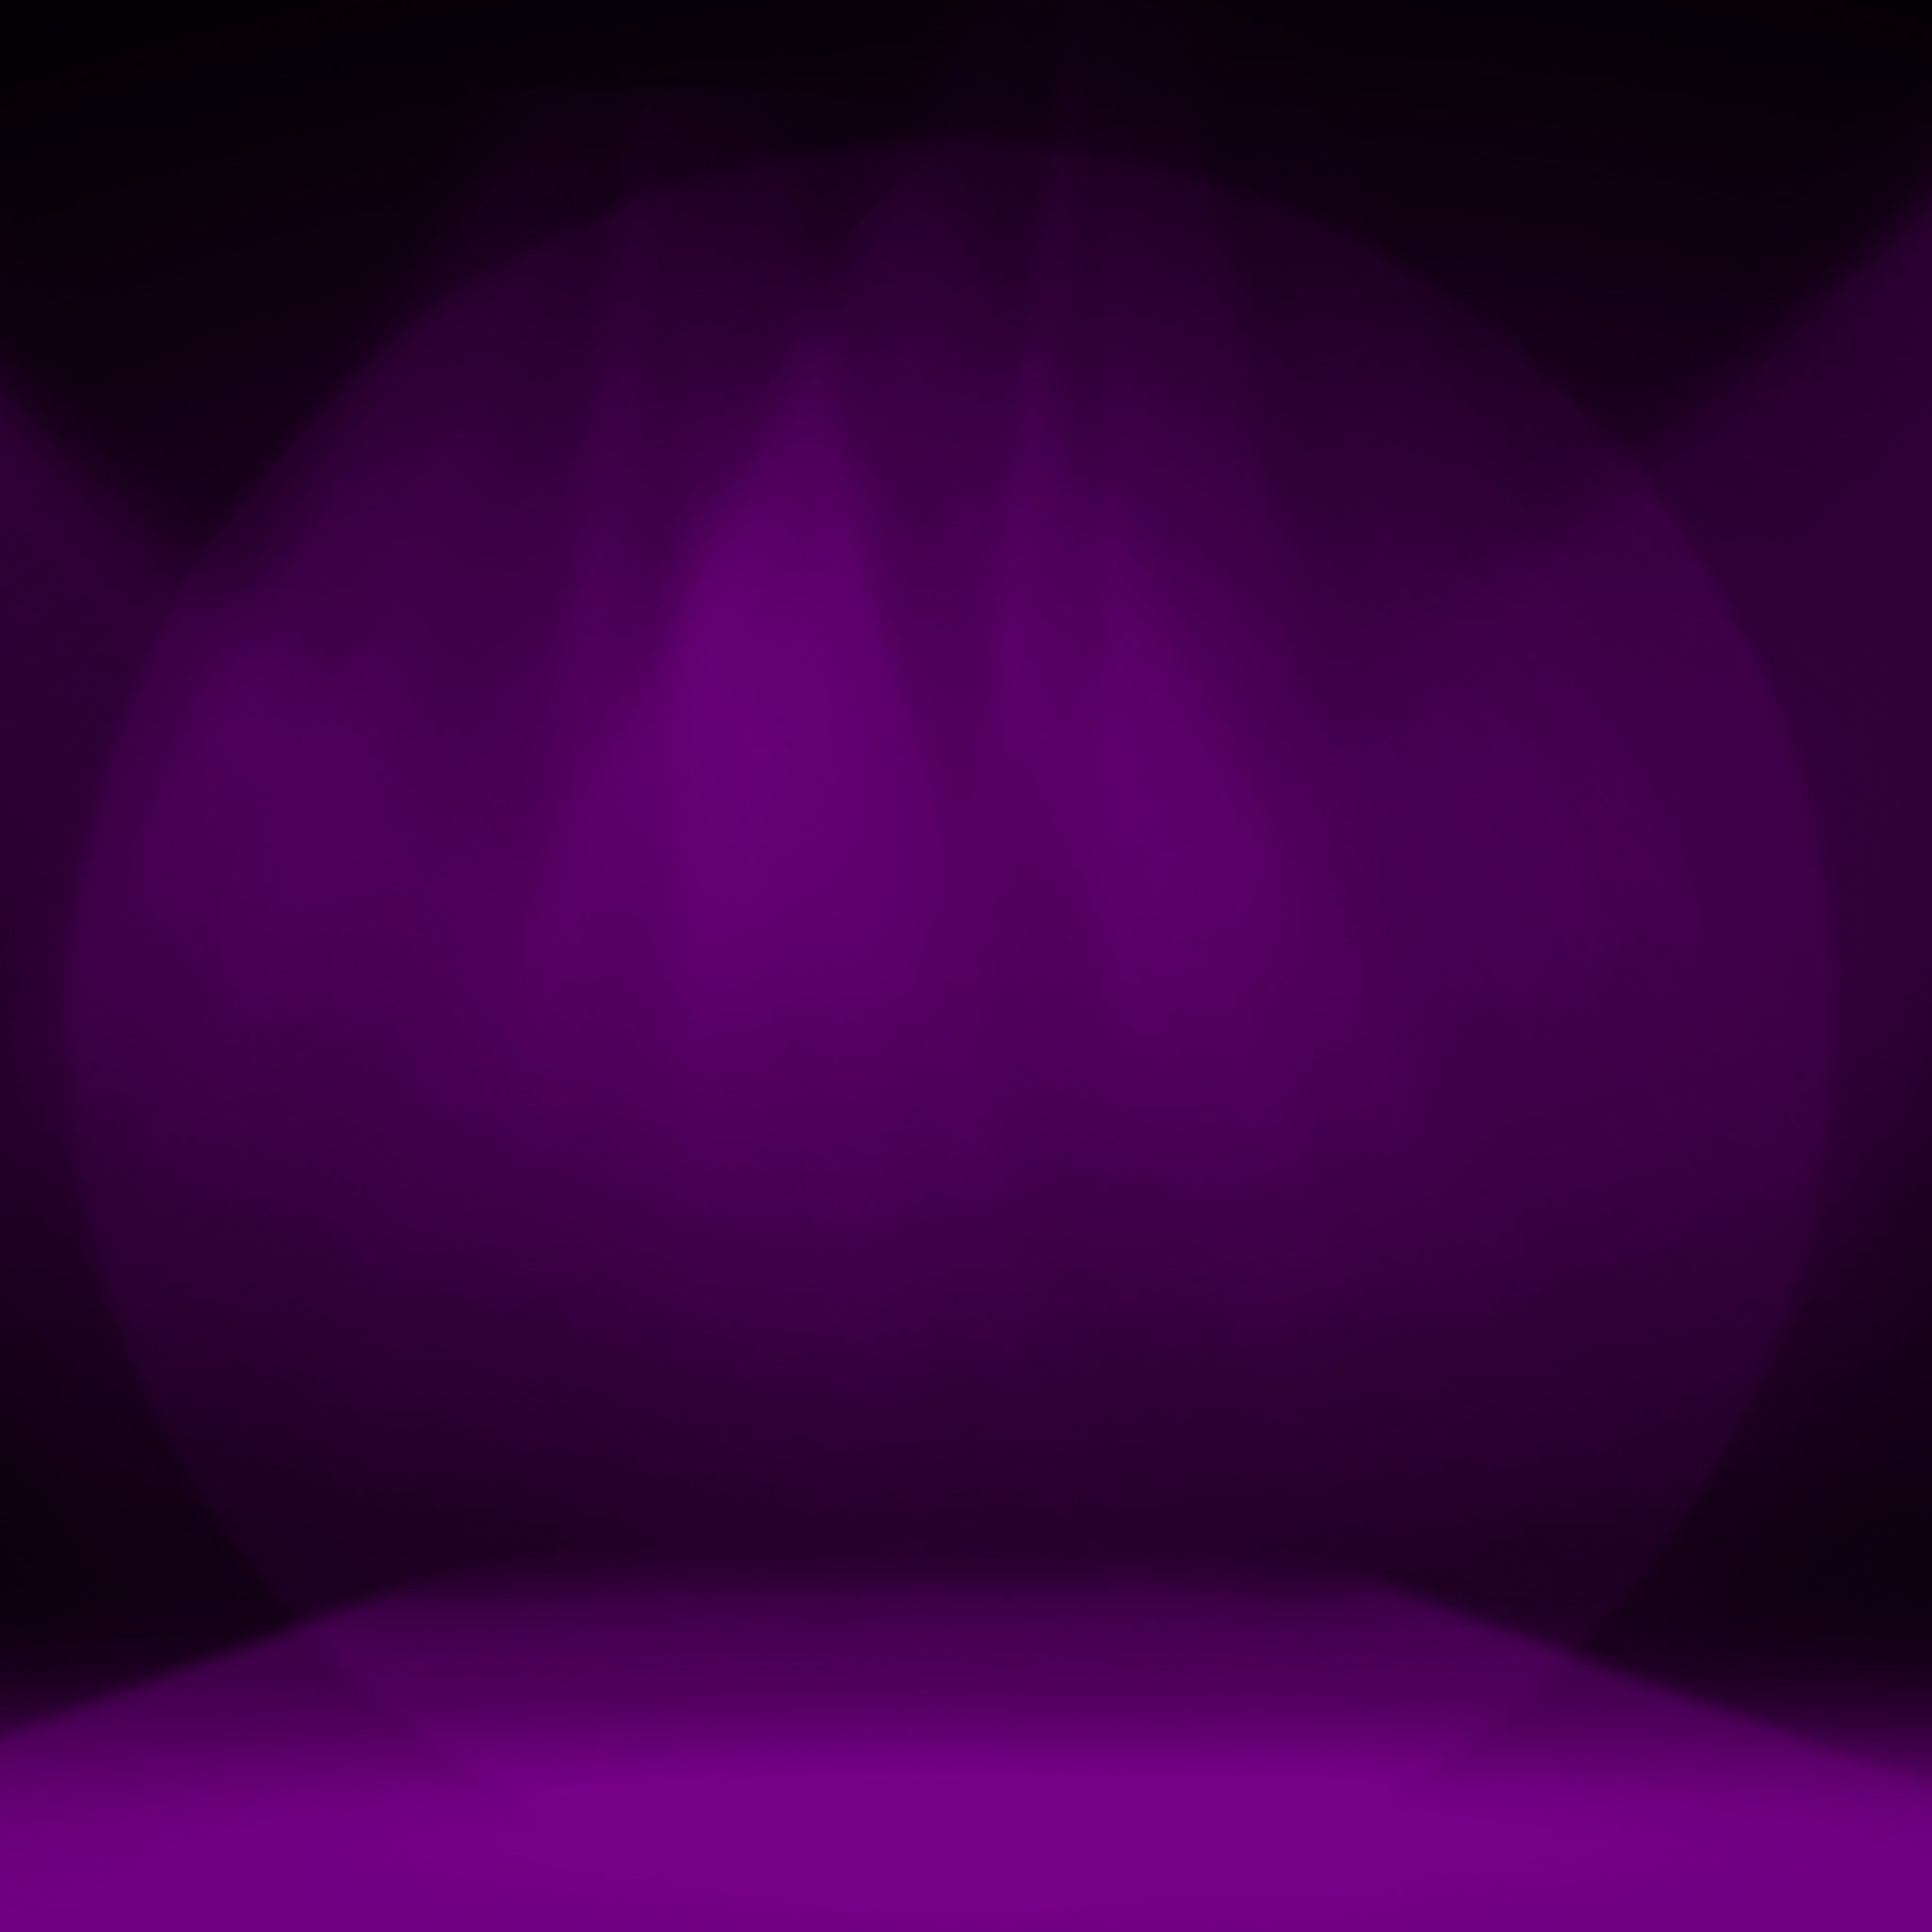 2048x2048 wallpapers iPad retina Purple Stage Decoration iPad Wallpaper 2048x2048 pixels resolution